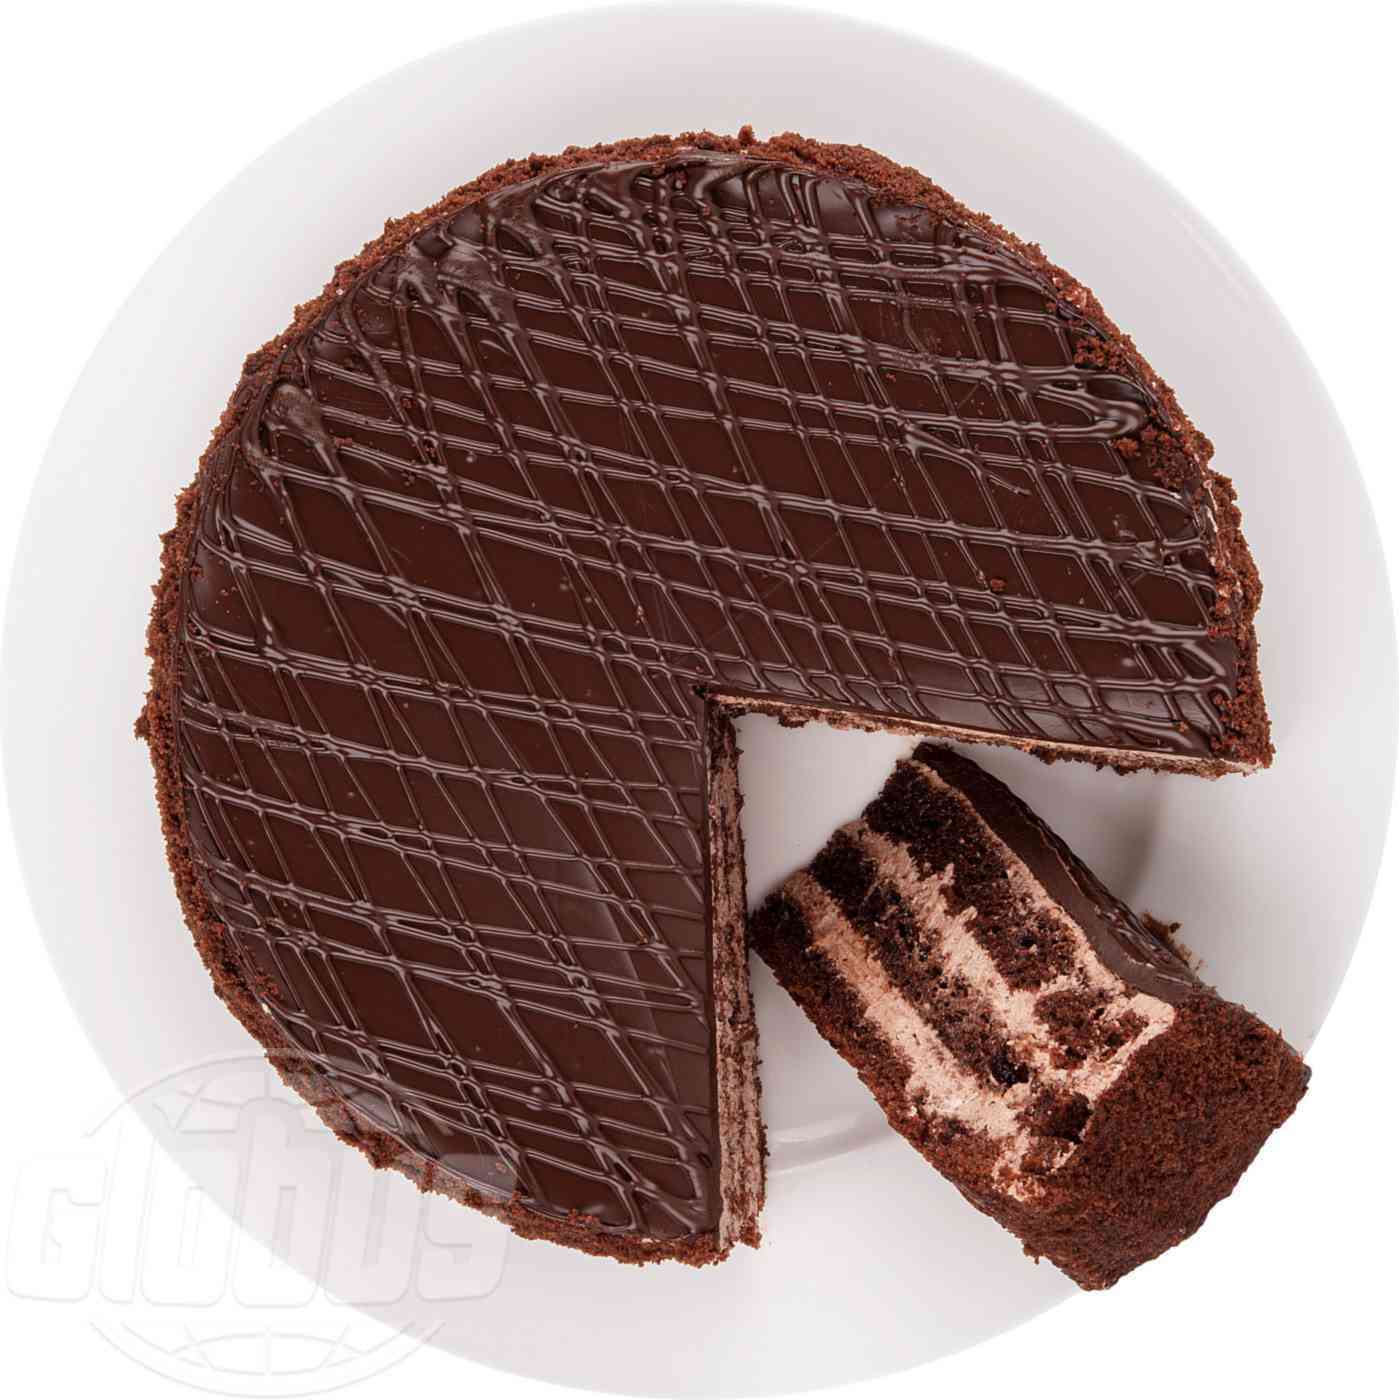 Электронный рецепт Шоколадного торта «Чёрная магия» от Энди шефа